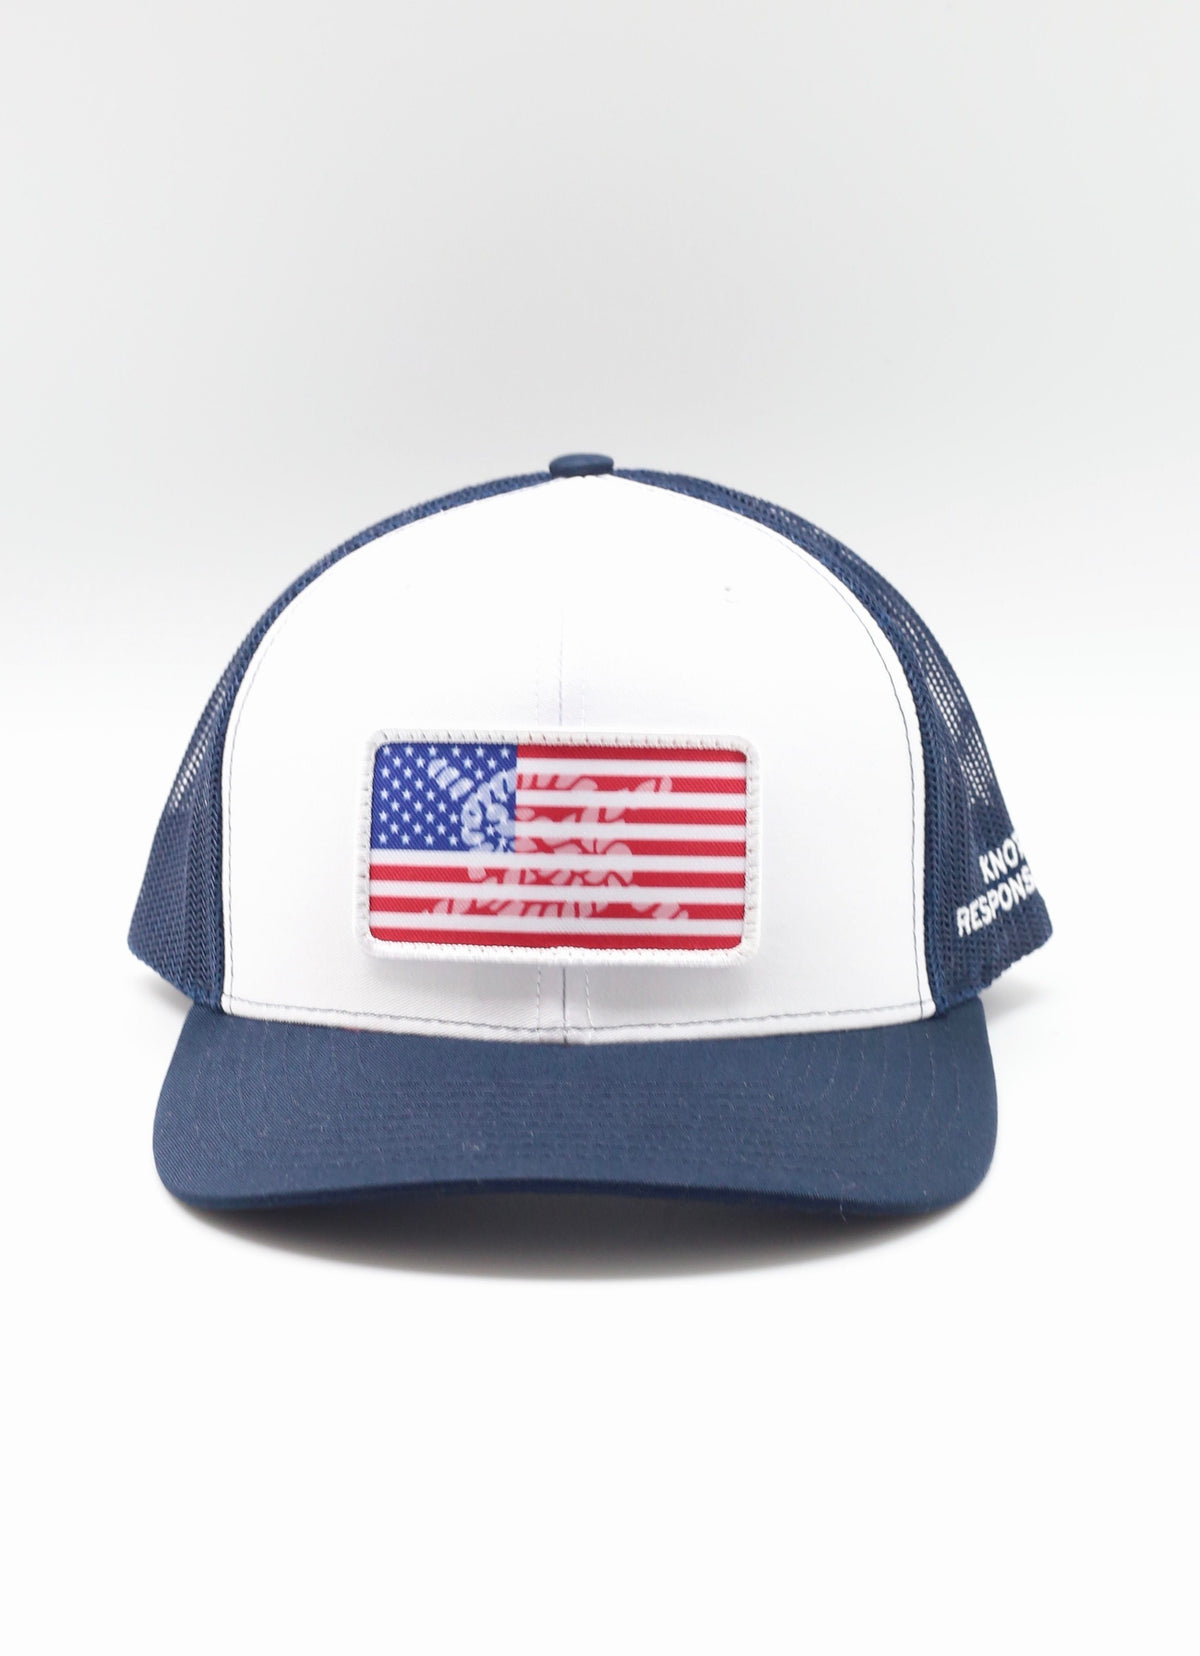 USA Patch Original Trucker Hat - Navy/White